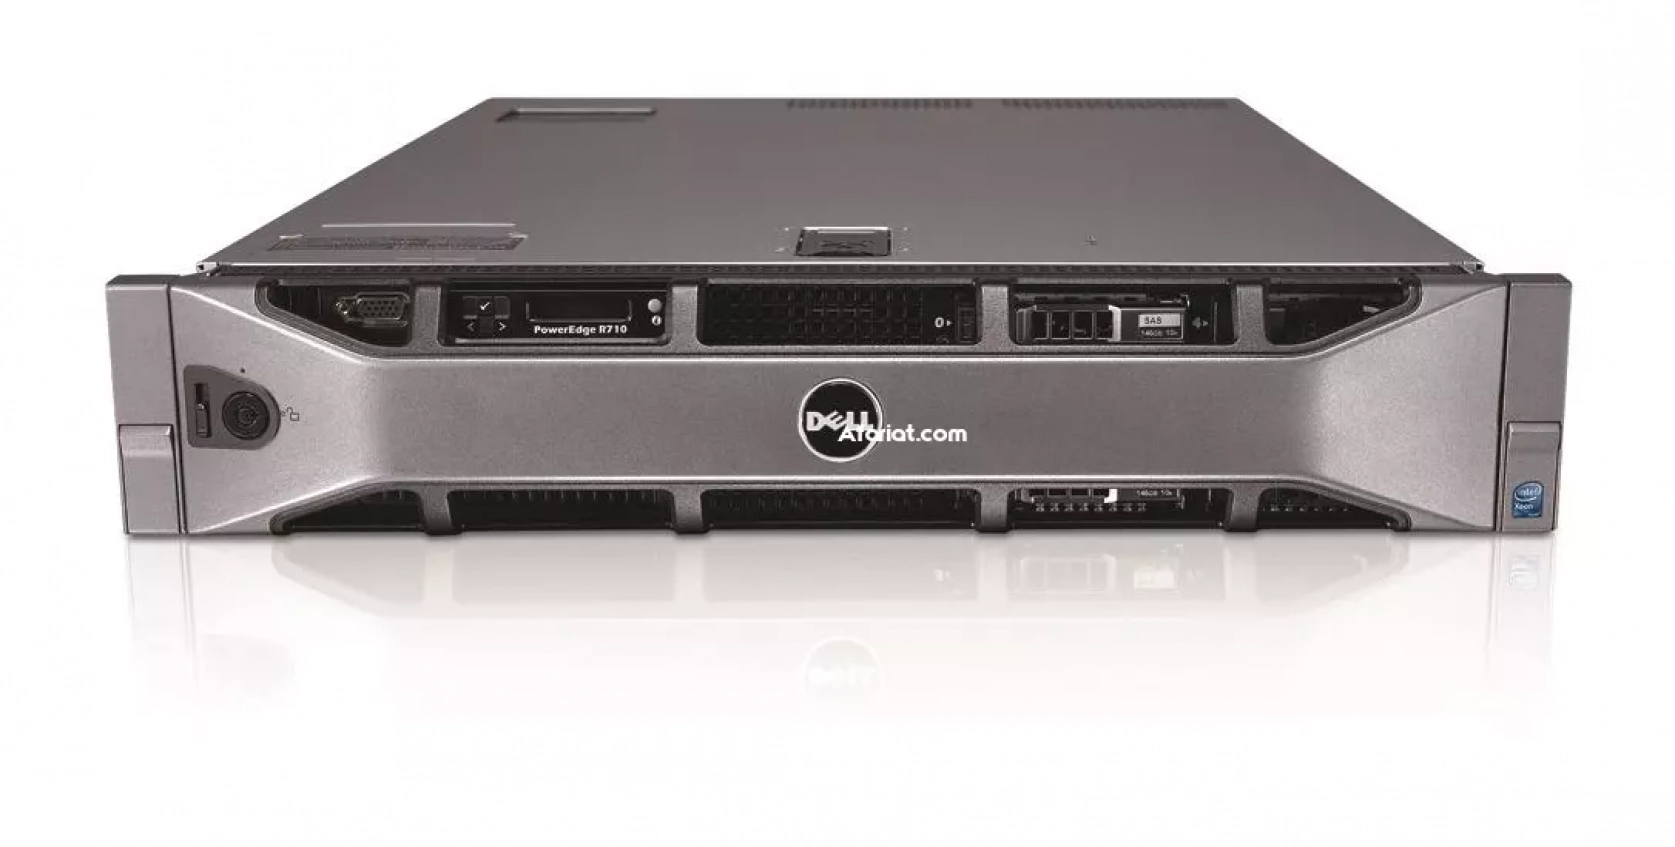 Dell poweredge R710